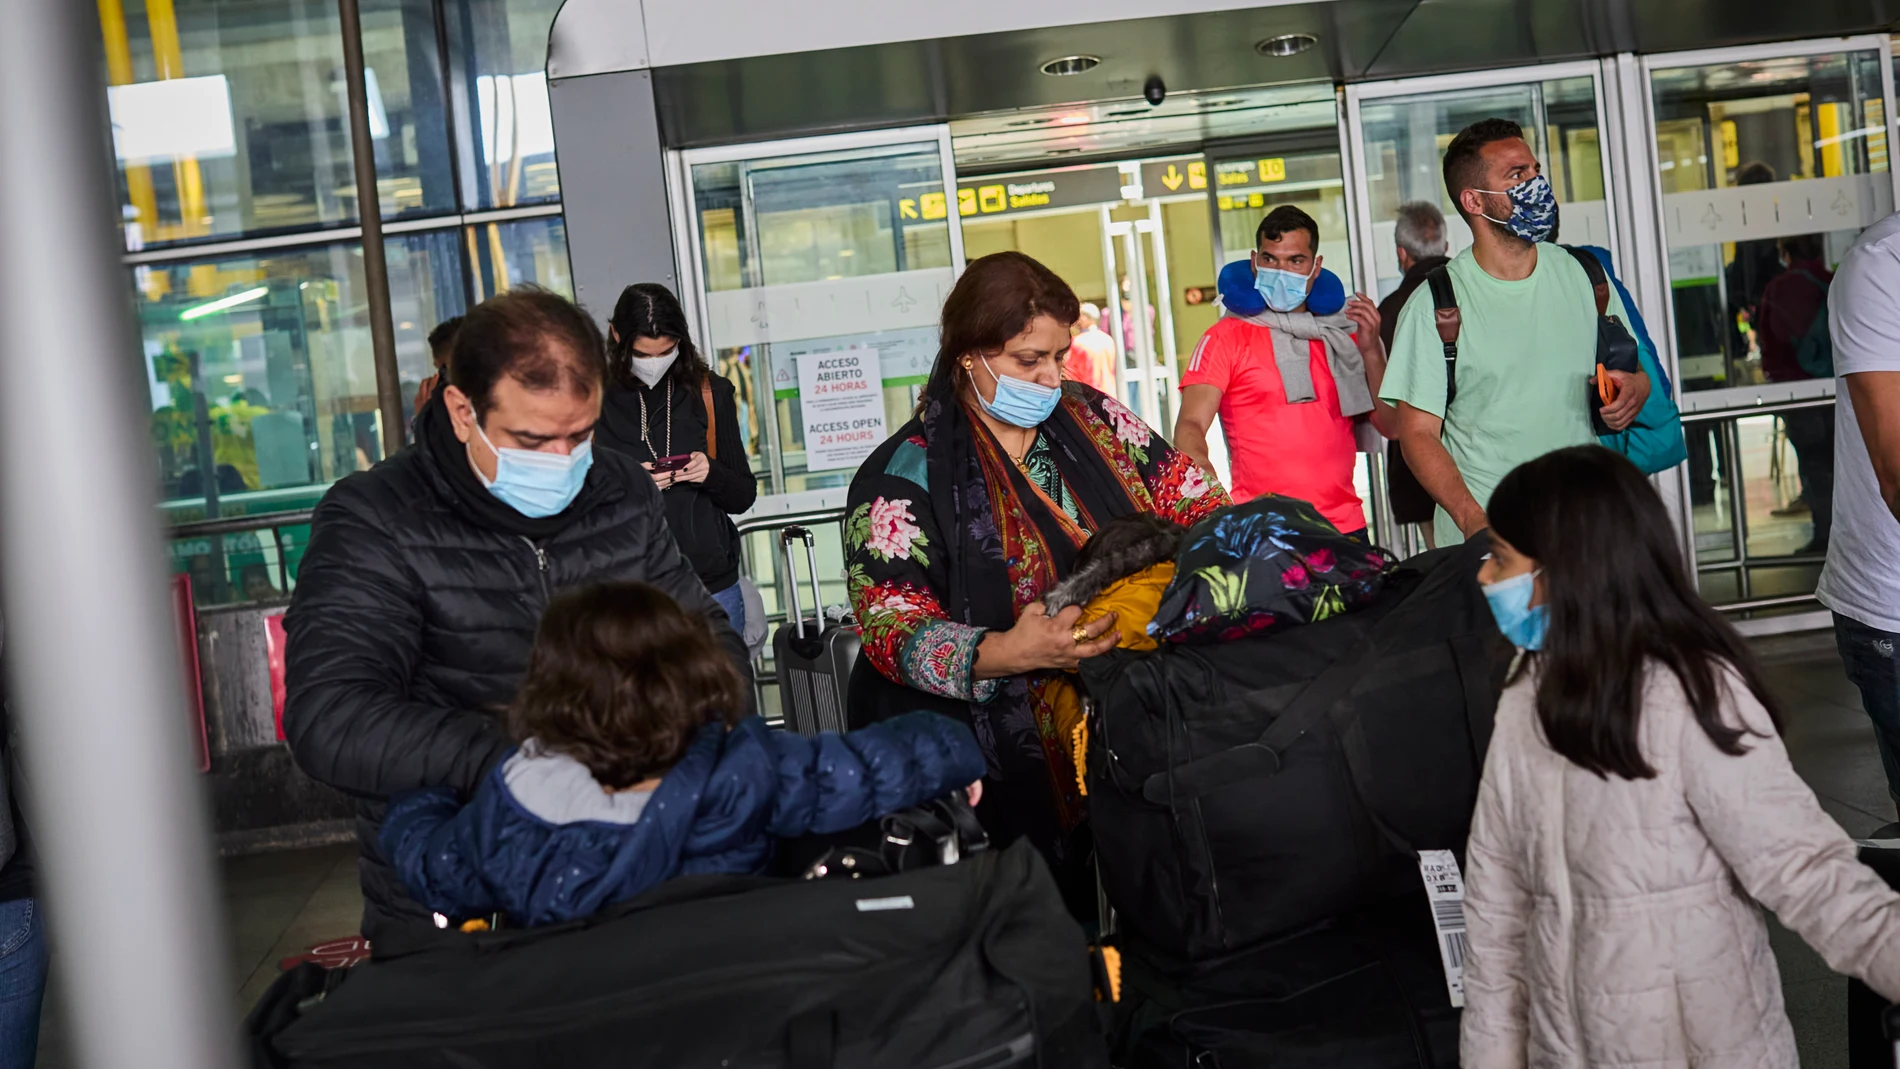 Llegada de viajeros a la Terminal 4 del aeropuerto Madrid-Barajas en los días en los que la pandemia se esta revelando como una muy grave crisis sanitaria en la India.Los viajeros empiezan a circular por los aeropuertos debido a la eliminación de las restricciones a la movilidad